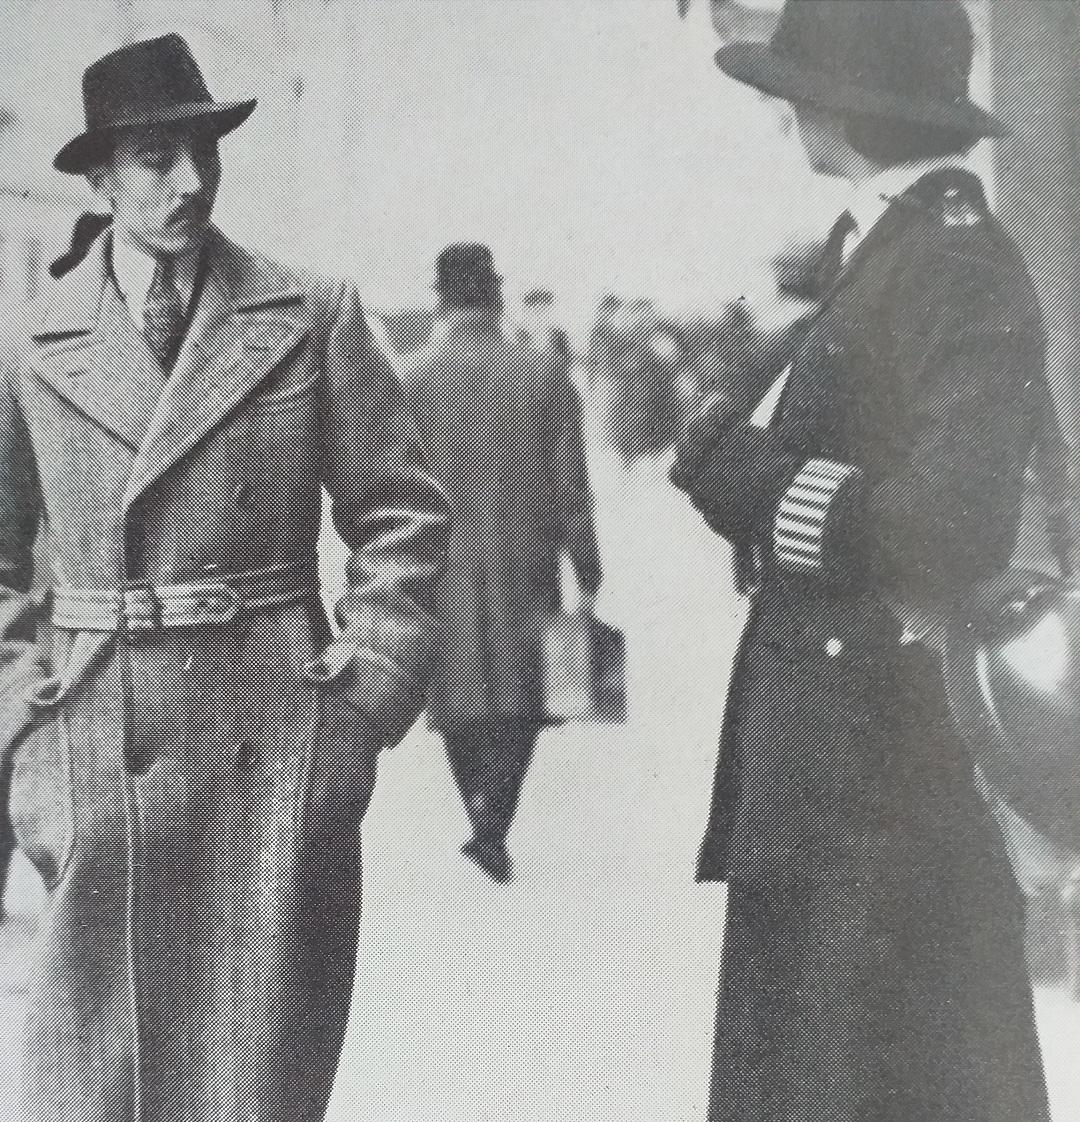 Le comte de paris en mission diplomatique en 1939 a londres 1